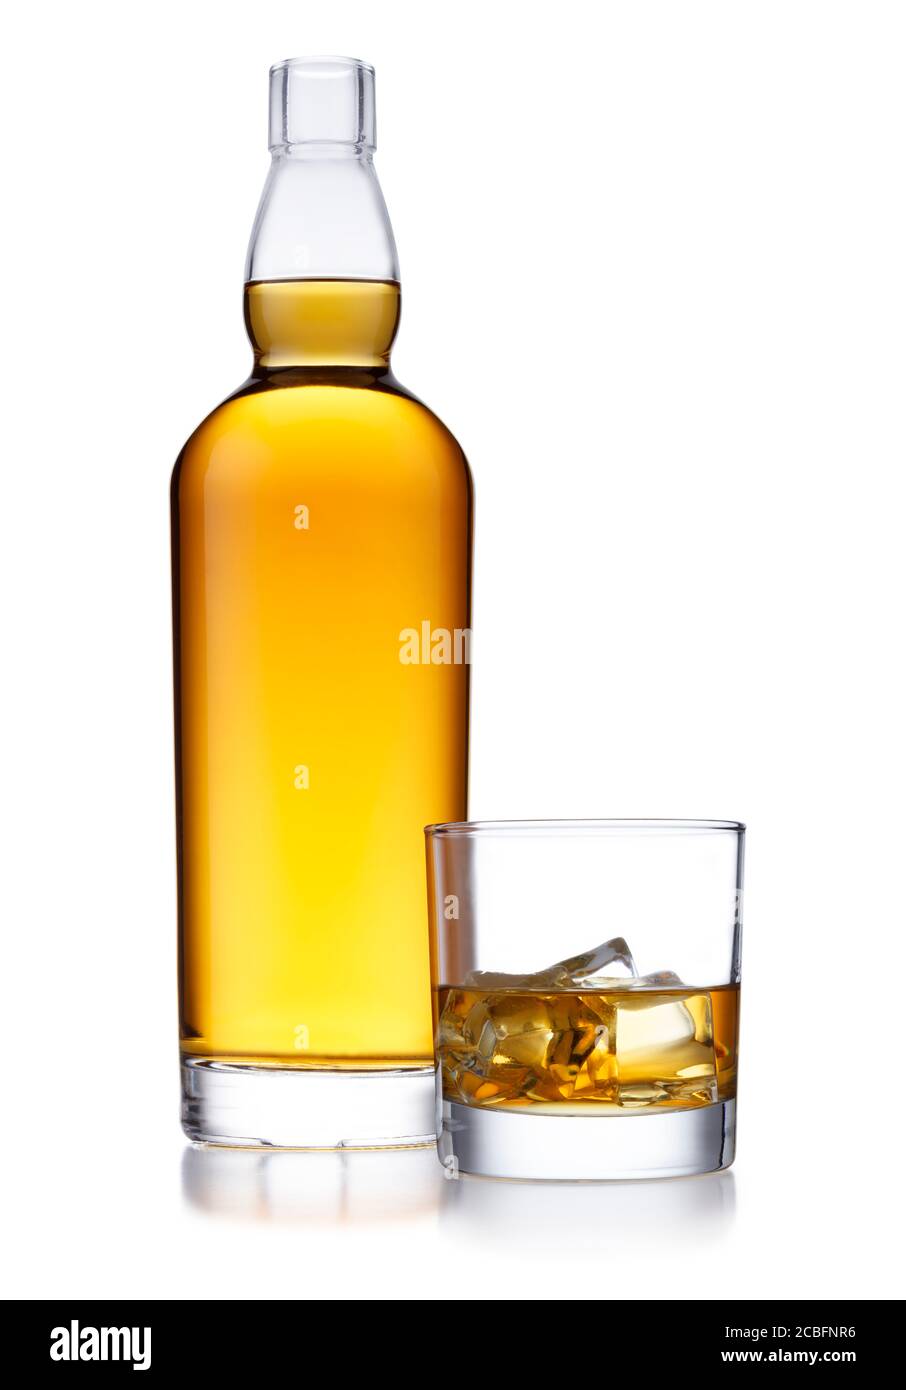 Eine große Flasche goldenen Whiskys, ohne Etikett oder Branding, und ein klassisches Glas Whisky und Eis, isoliert auf Weiß mit einer leichten Reflexion Stockfoto